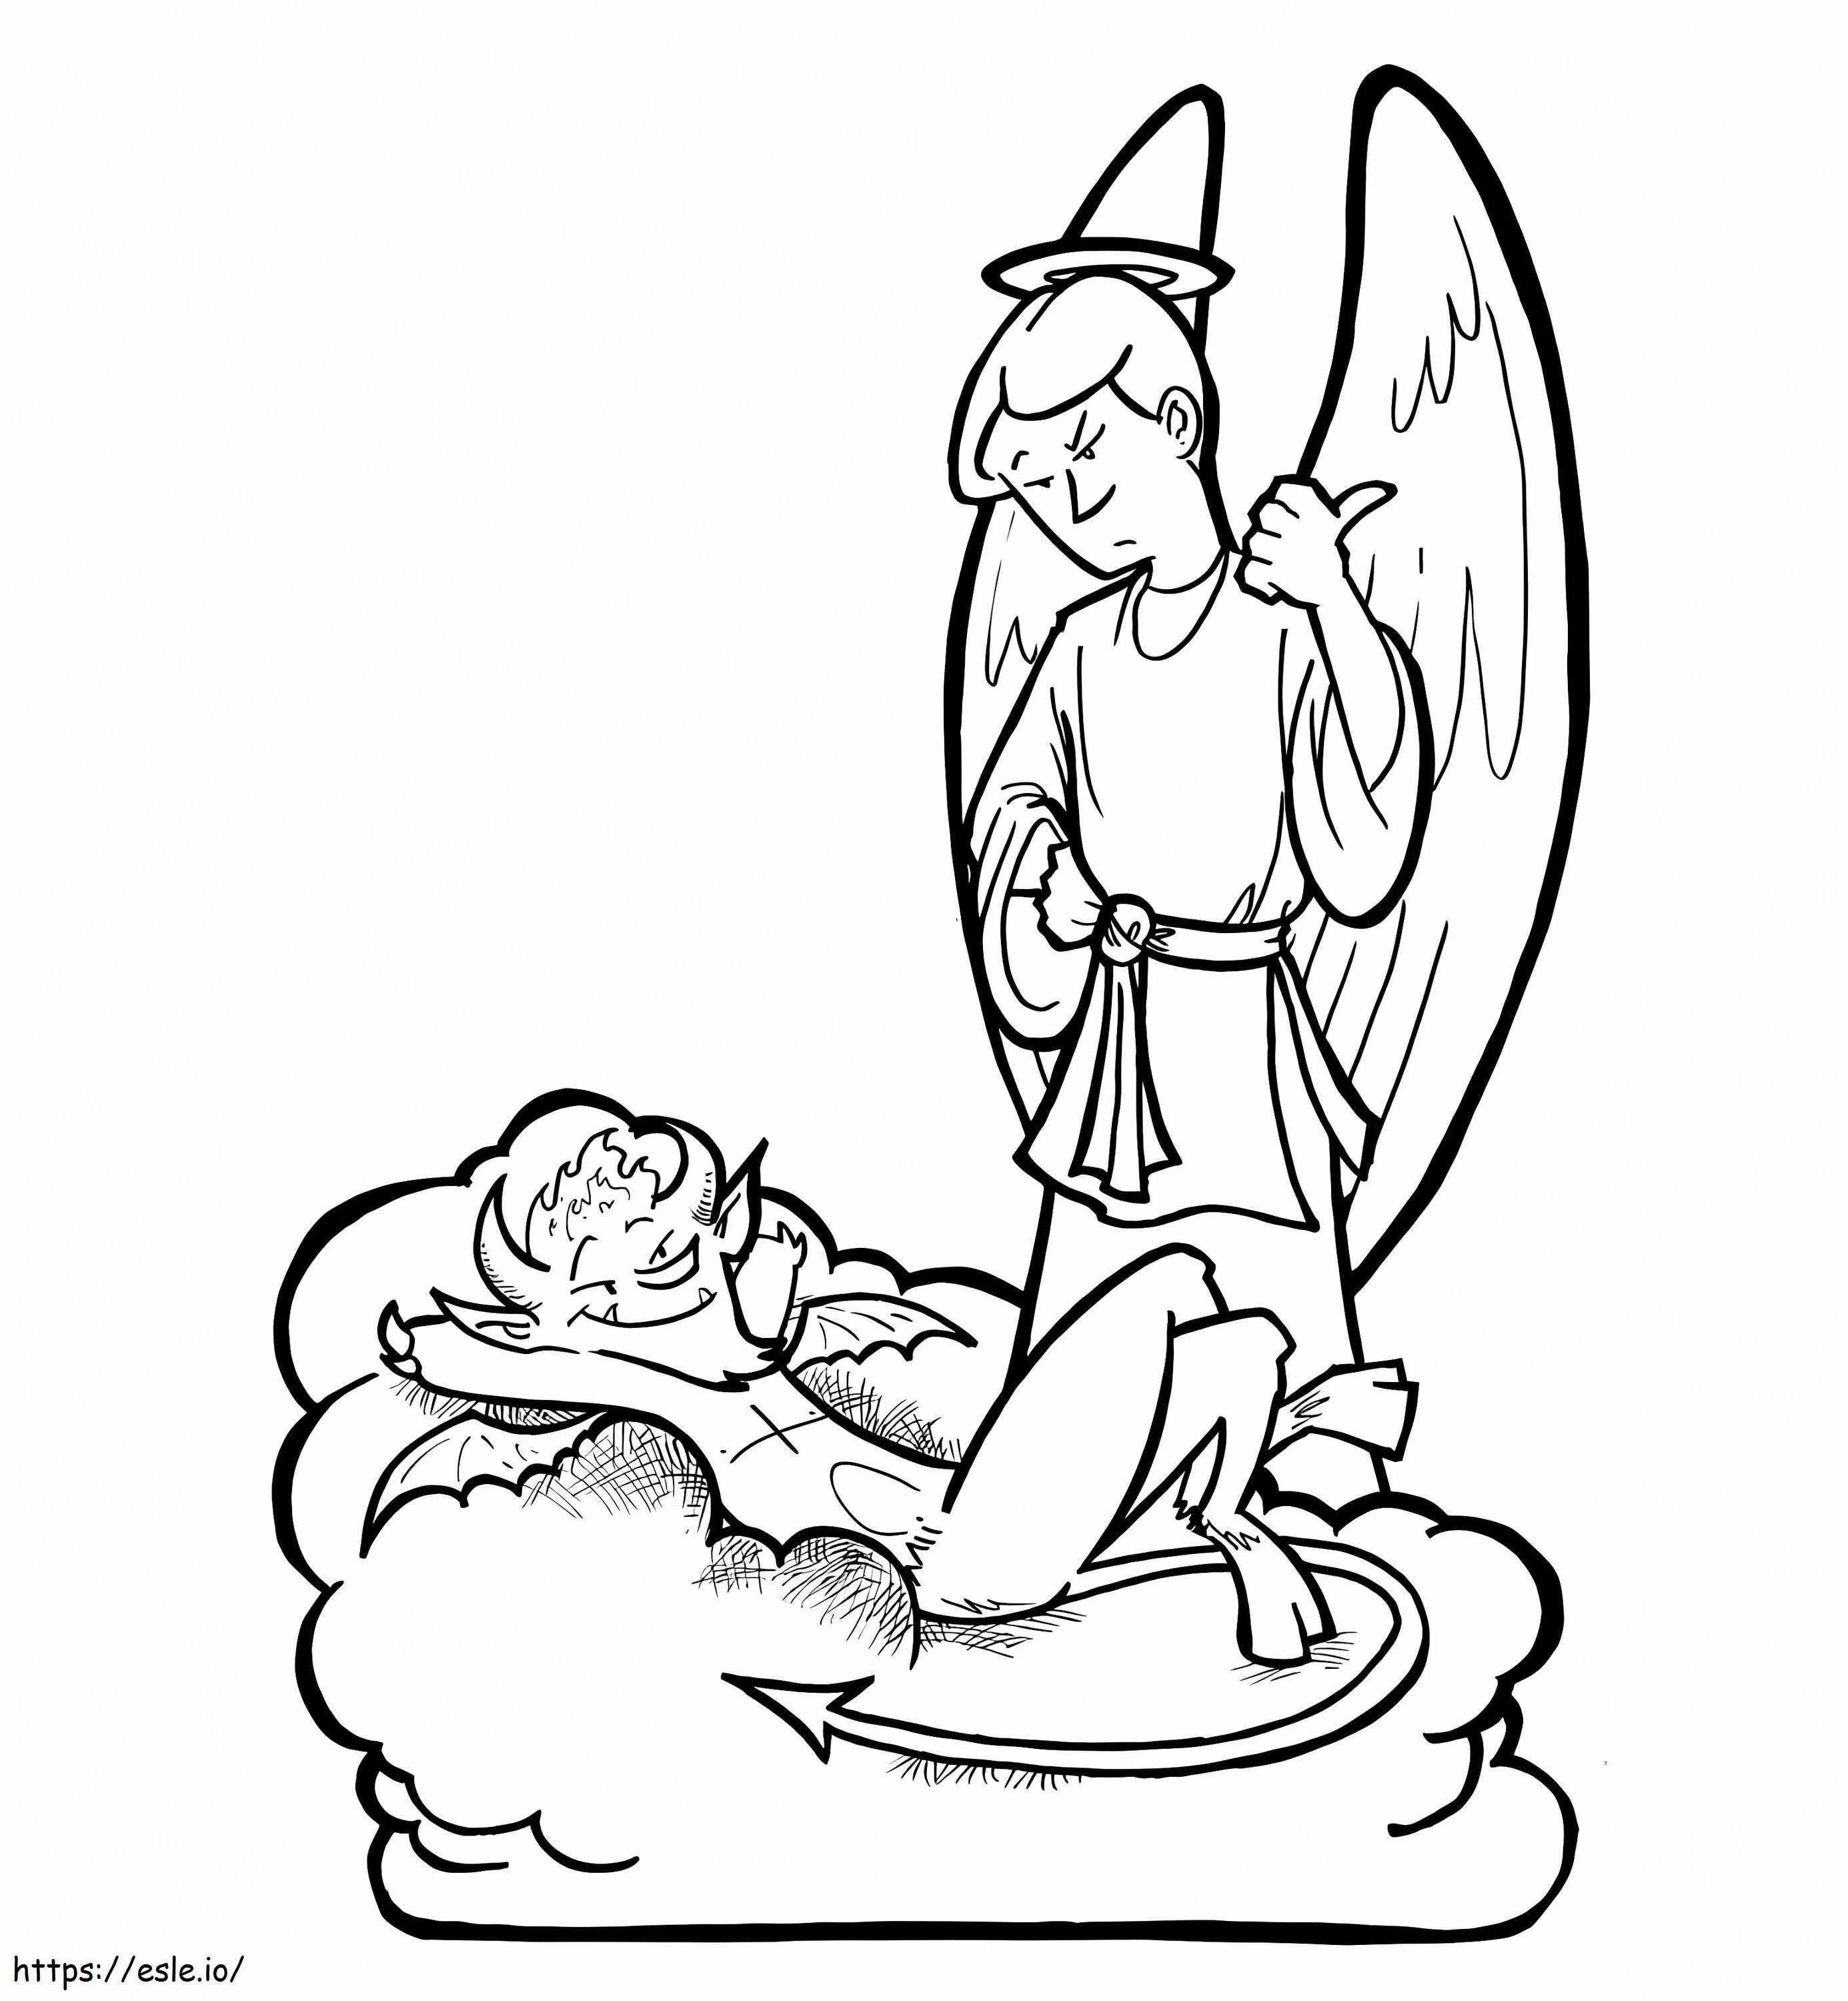  Înger și Diavol de colorat